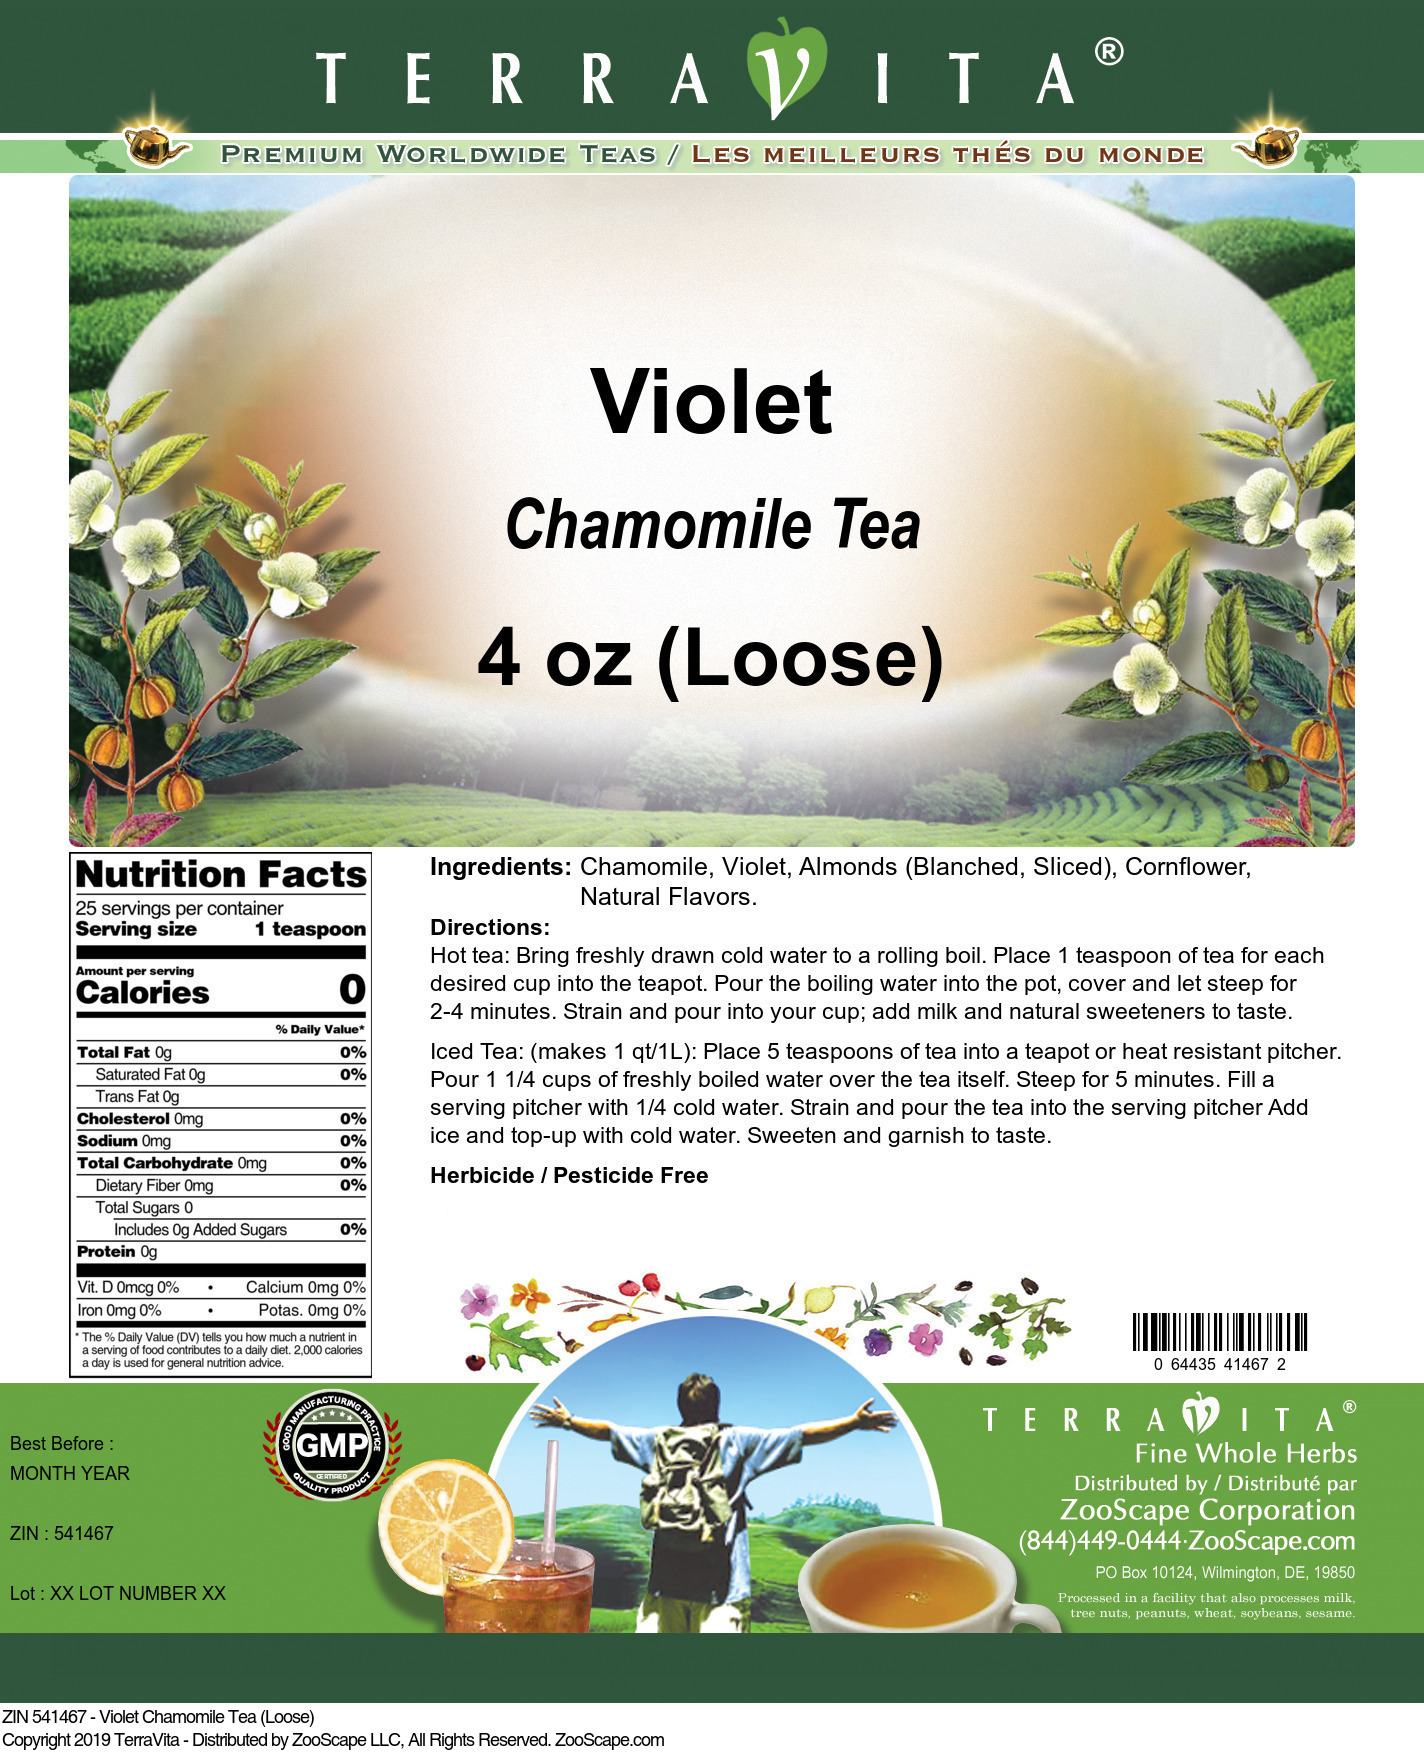 Violet Chamomile Tea (Loose) - Label